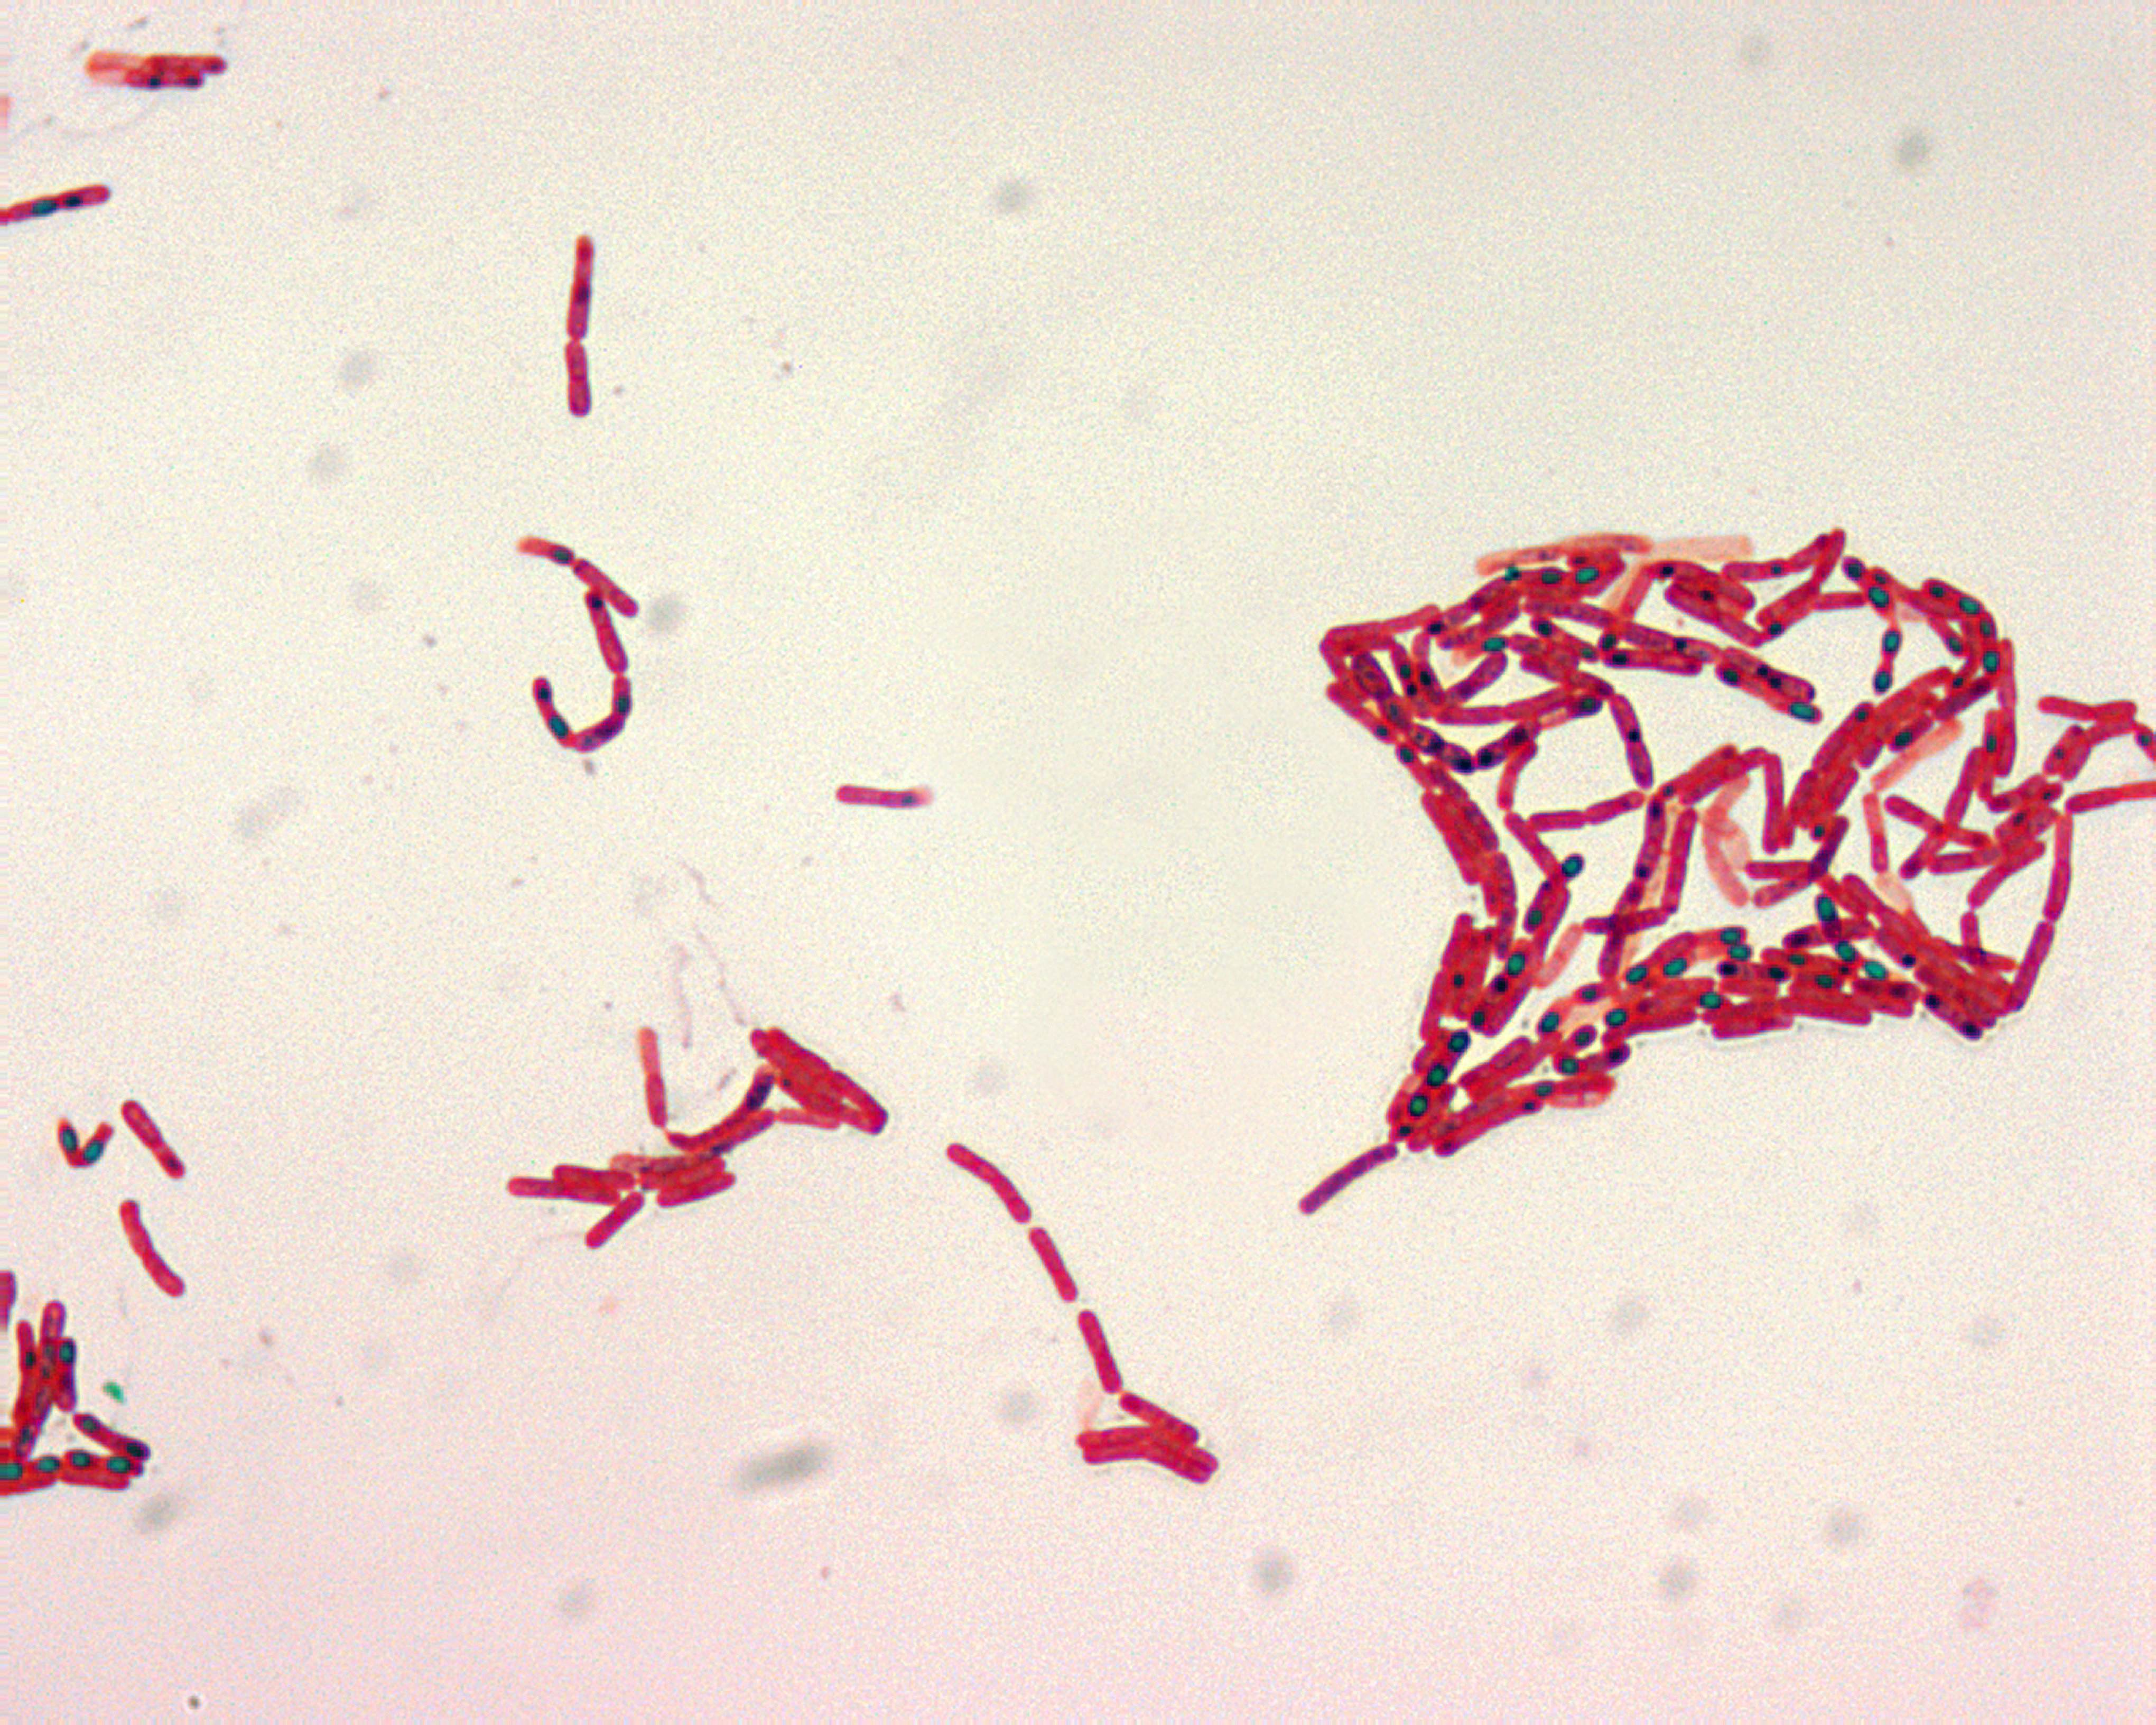 bacillus megaterium spore stain